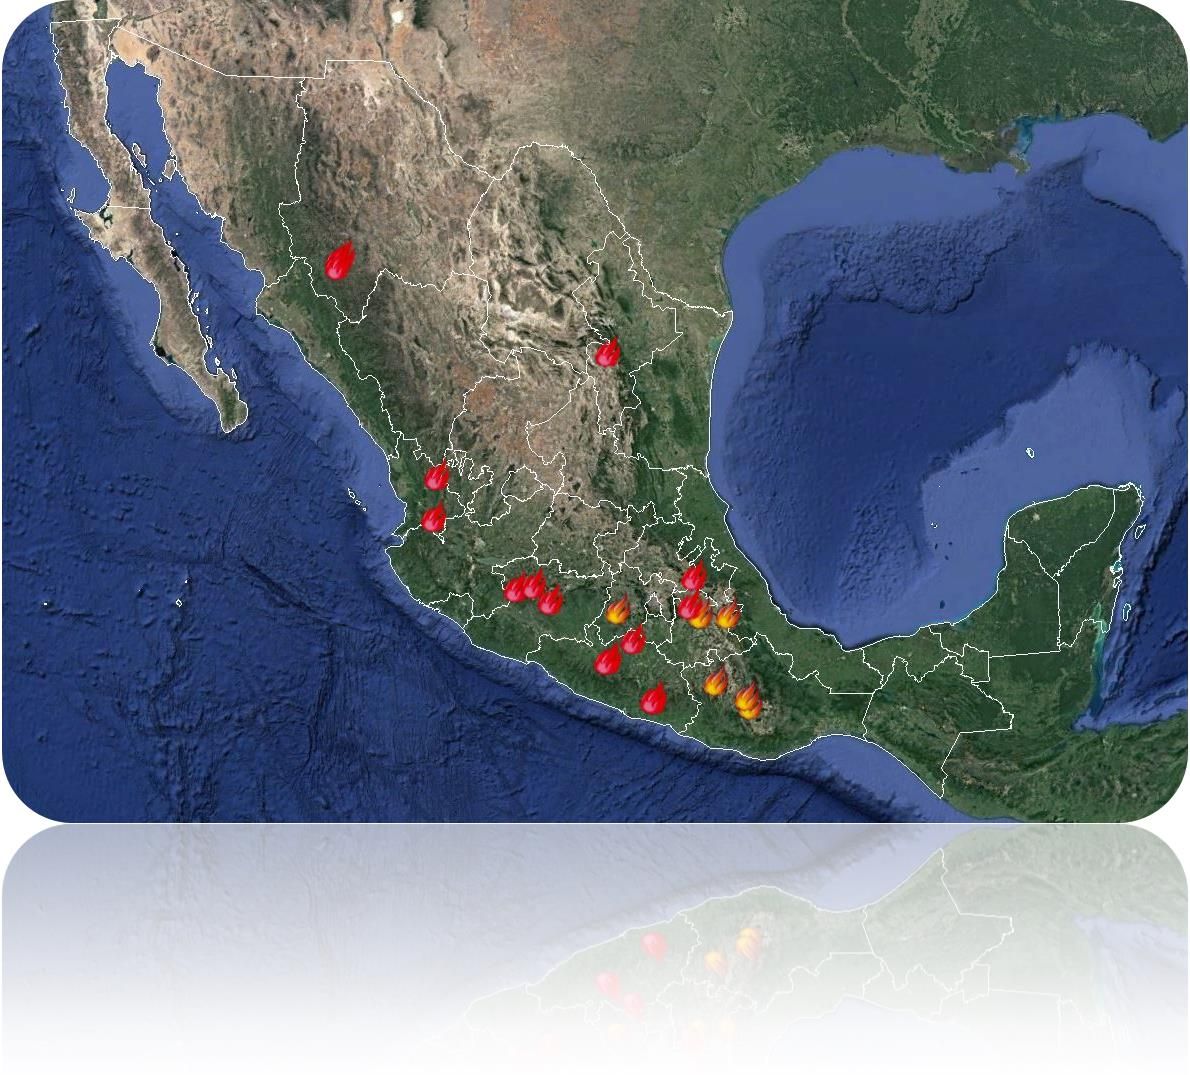 Se registran 22 incendios forestales activos ubicados en 9 estados del país.